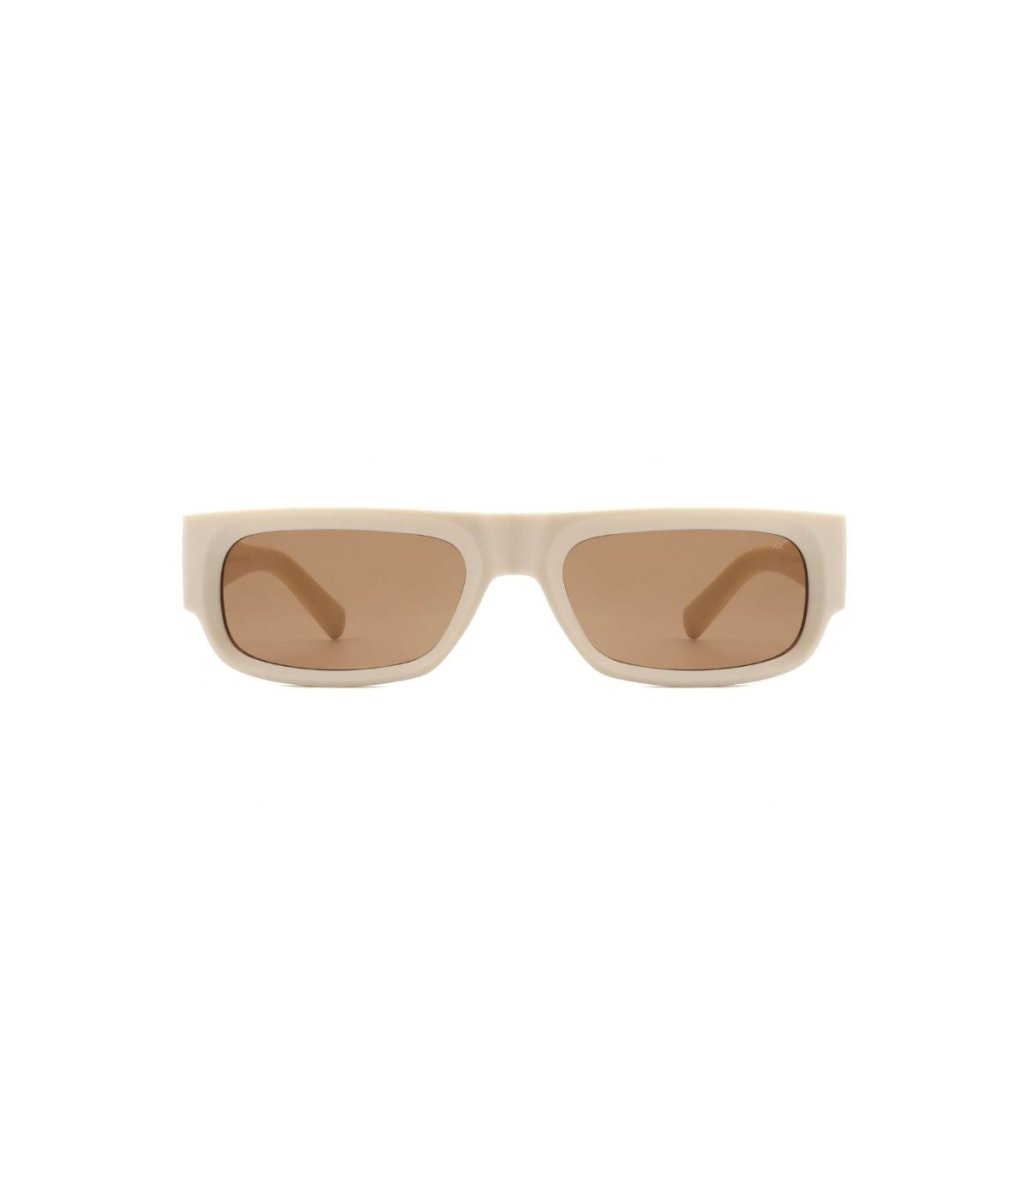 Sonnenbrille Jean Cream - A.Kjaerbede - MALA - The Concept Store